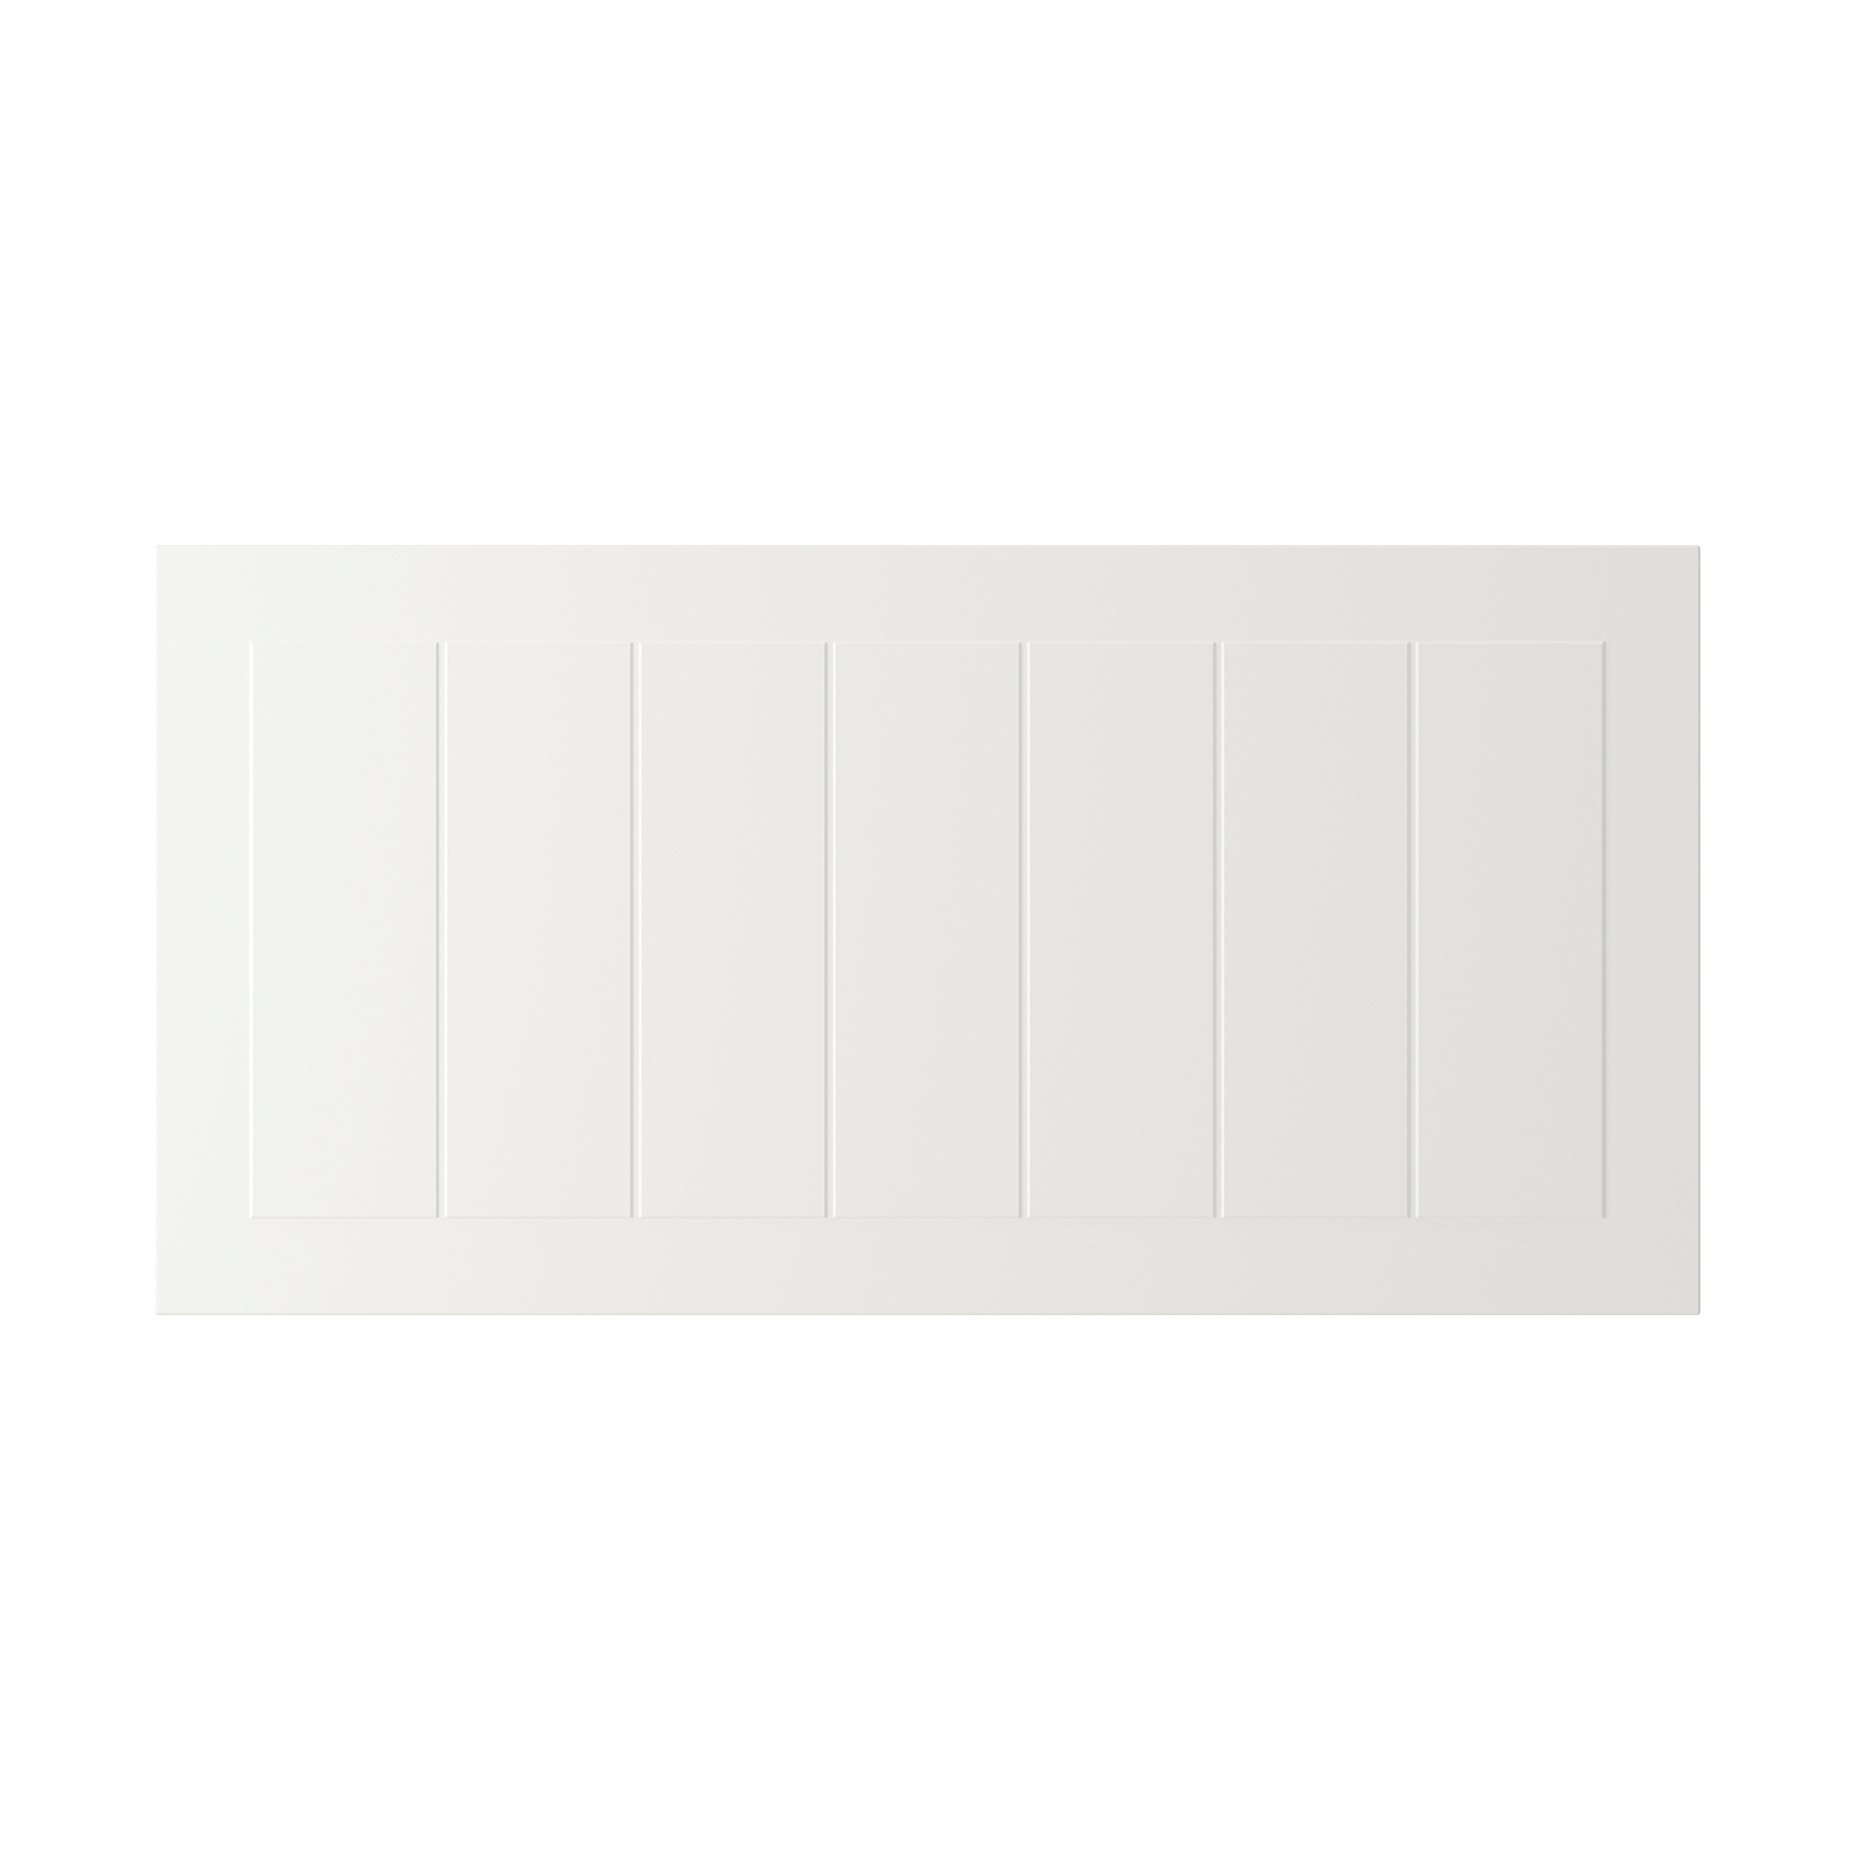 STENSUND, drawer front, 80x40 cm, 404.505.81